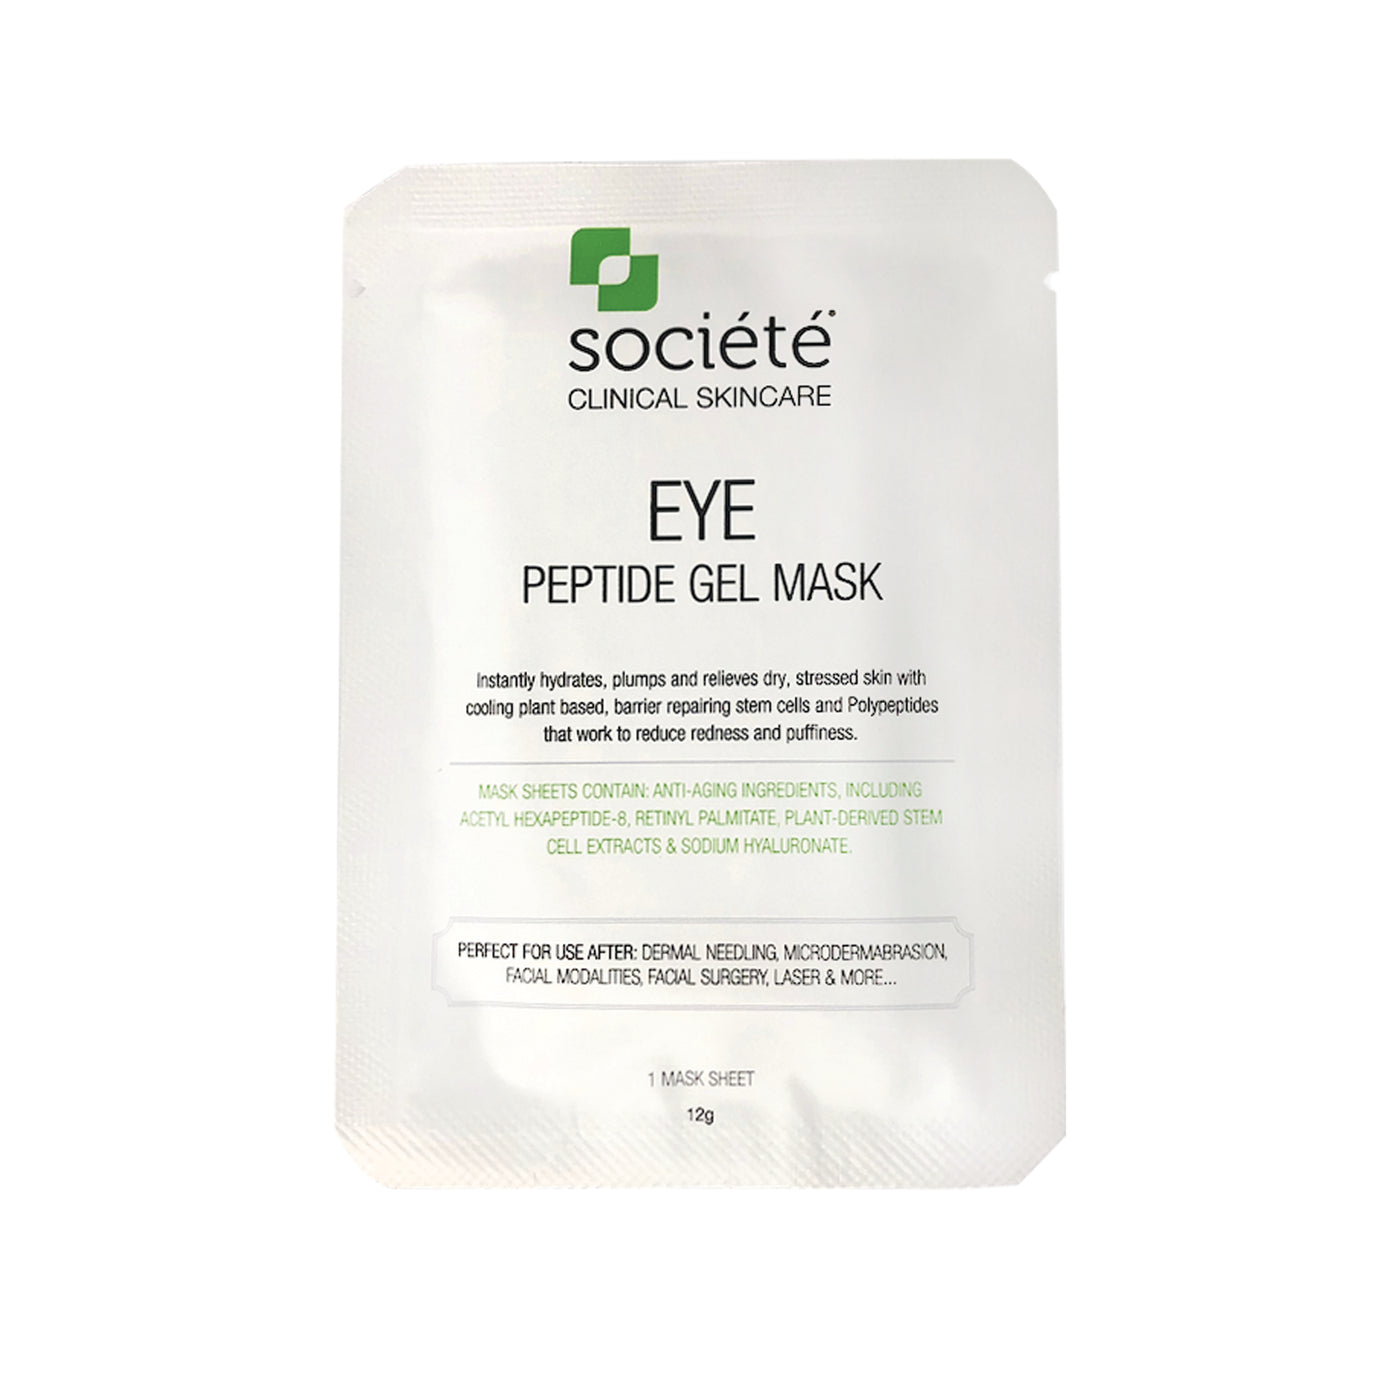 Eye Peptide Mask 12g Societe NR